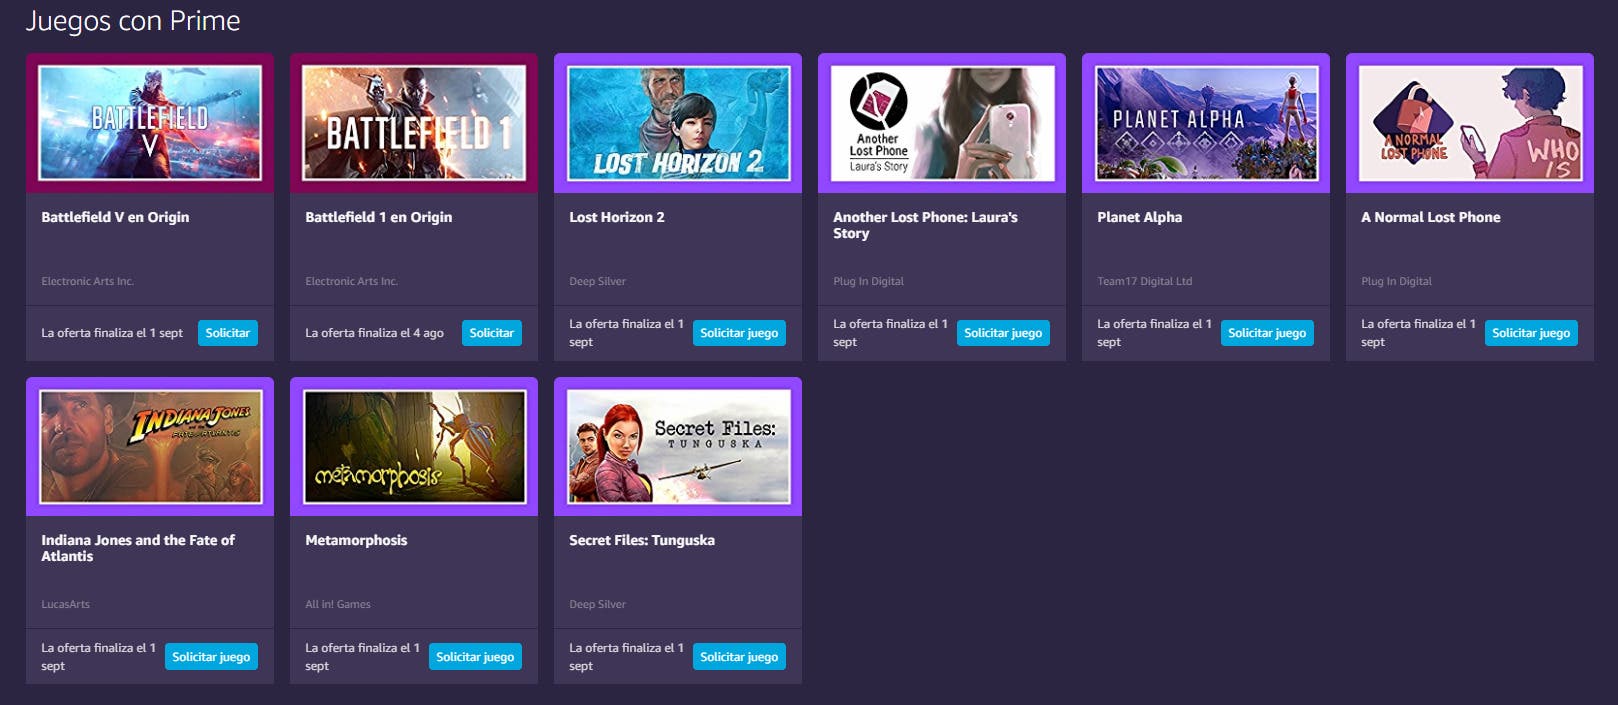 Puedes descargar gratis estos 8 juegos si eres miembro Twitch Prime!